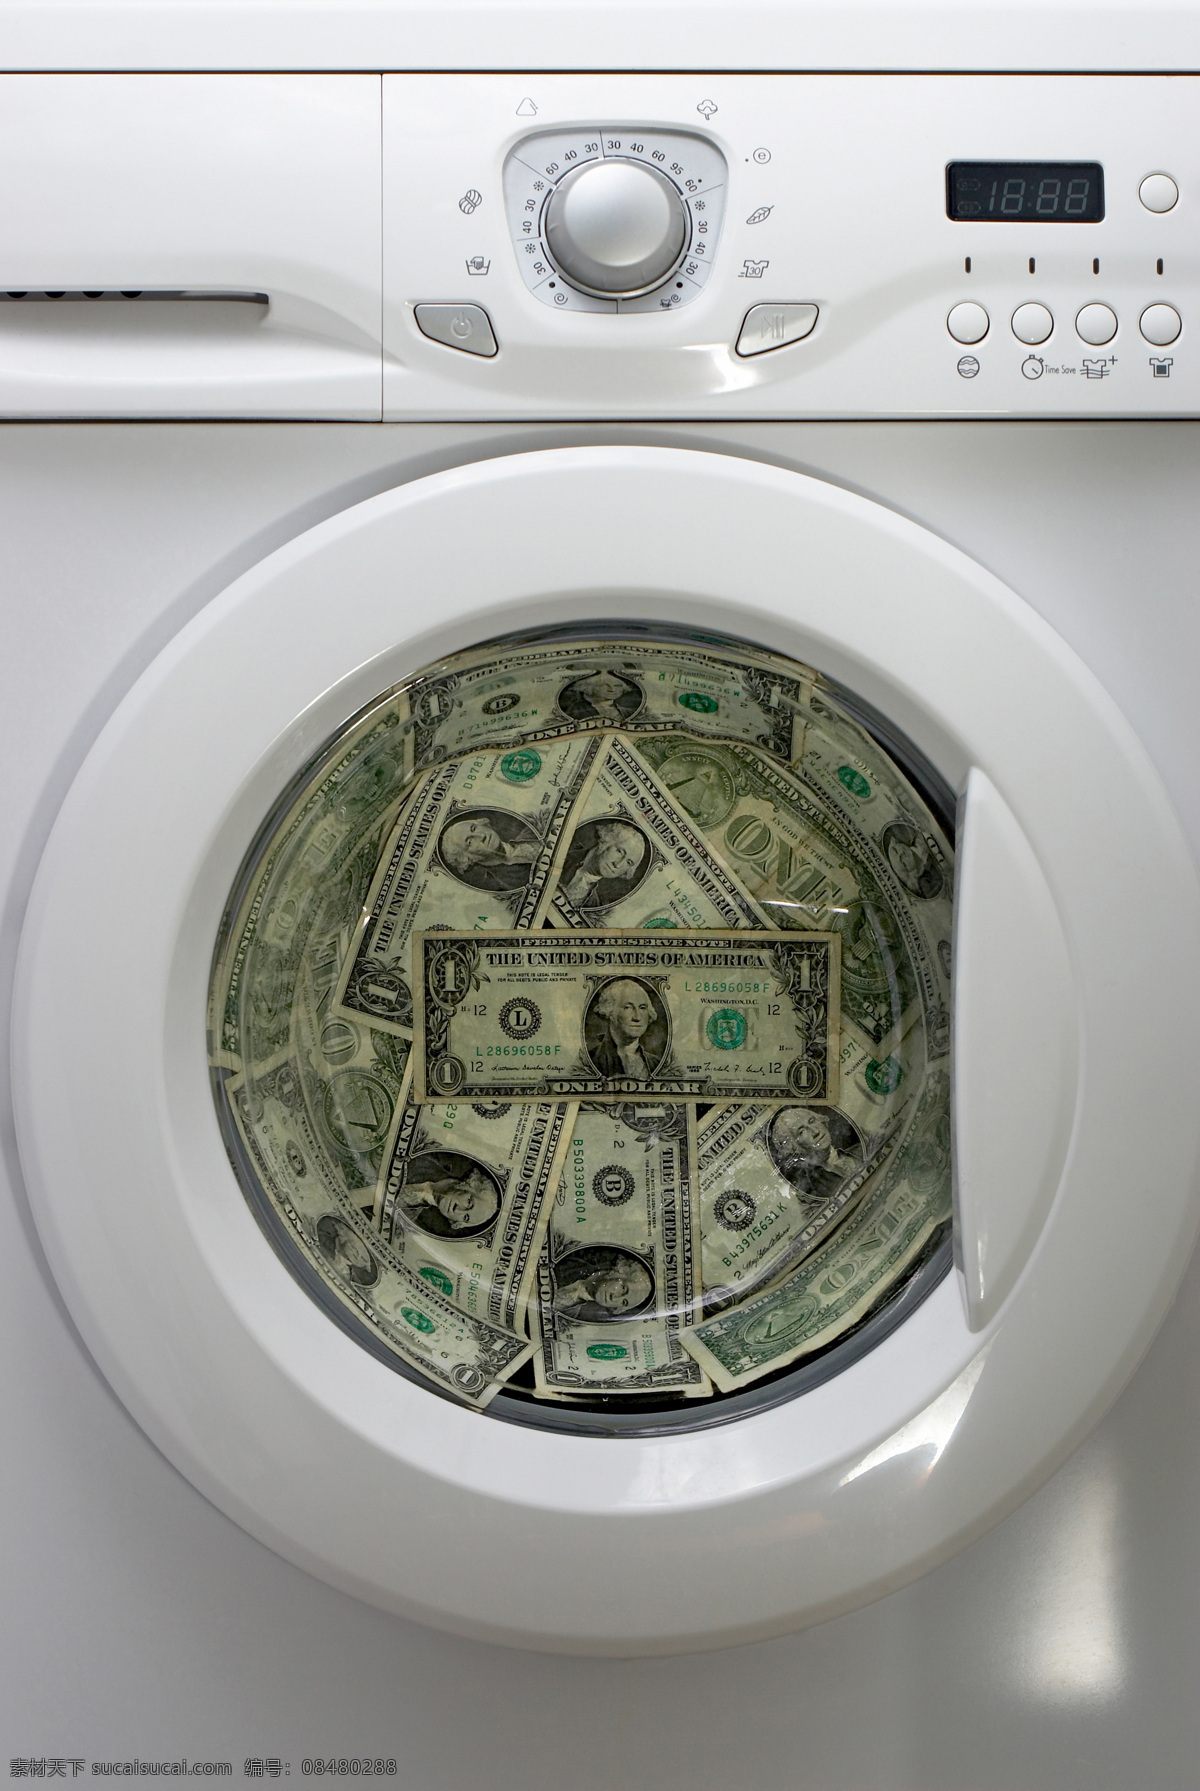 洗衣机 钱币 电器 家电 洗衣机与钱币 纸币 金融 金融货币 商务金融